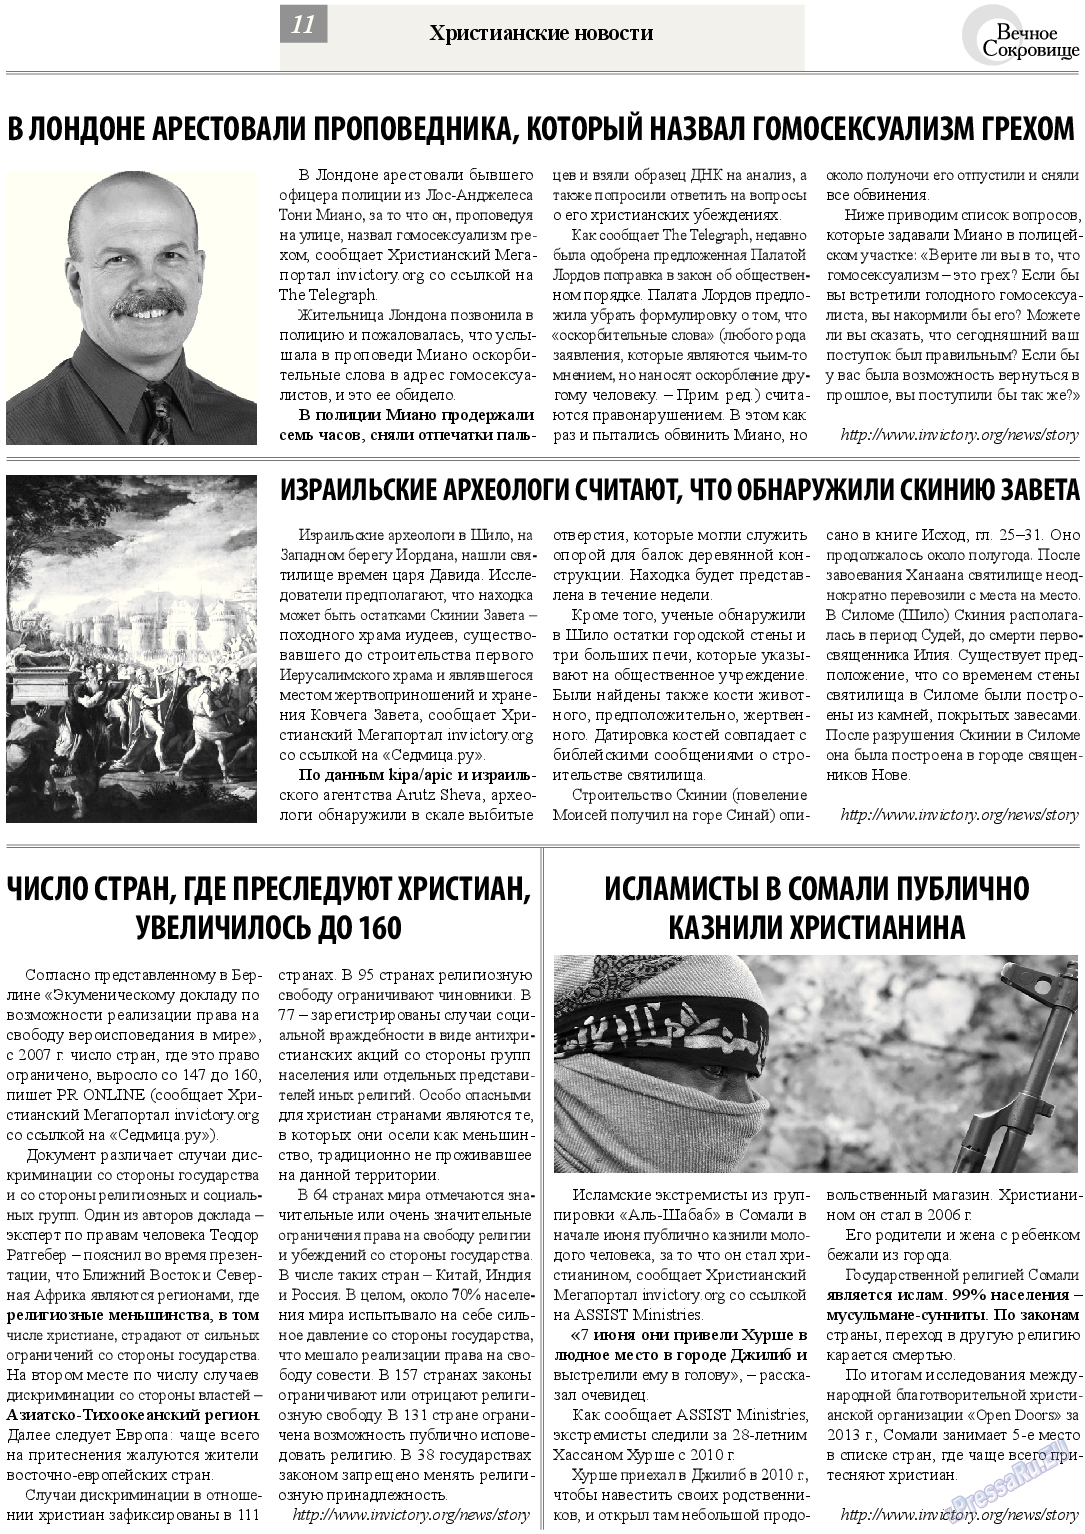 Вечное сокровище, газета. 2013 №4 стр.11